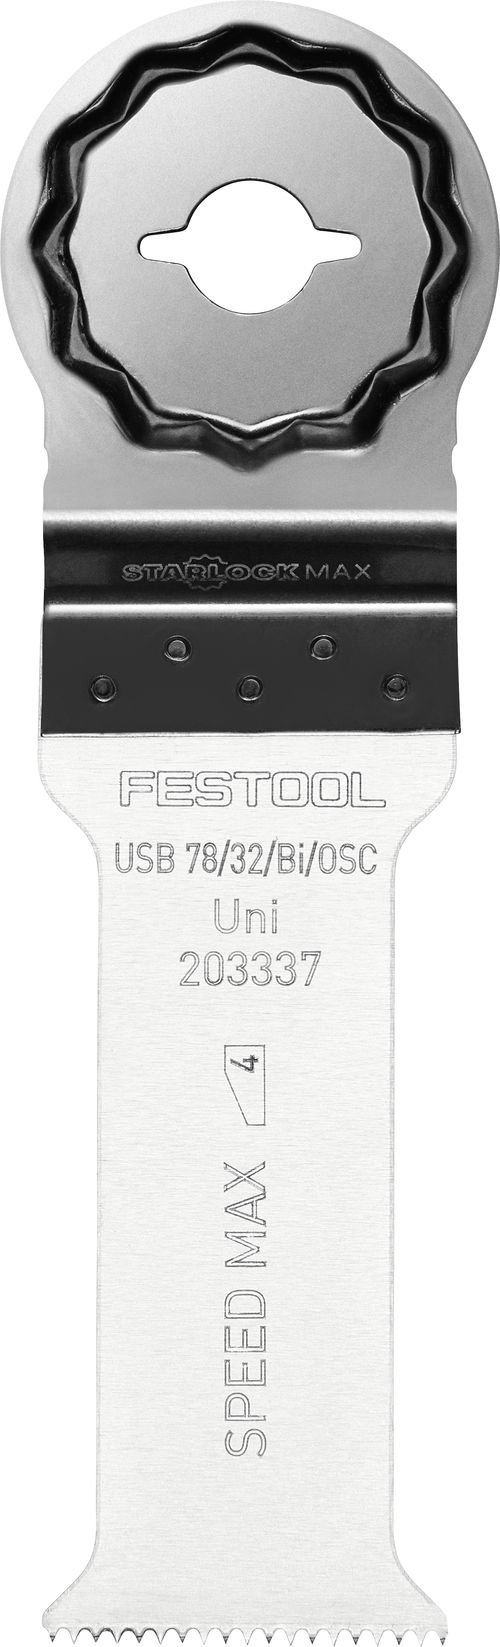 Univerzálny pílový kotúc USB 78/32/Bi/OSC/5